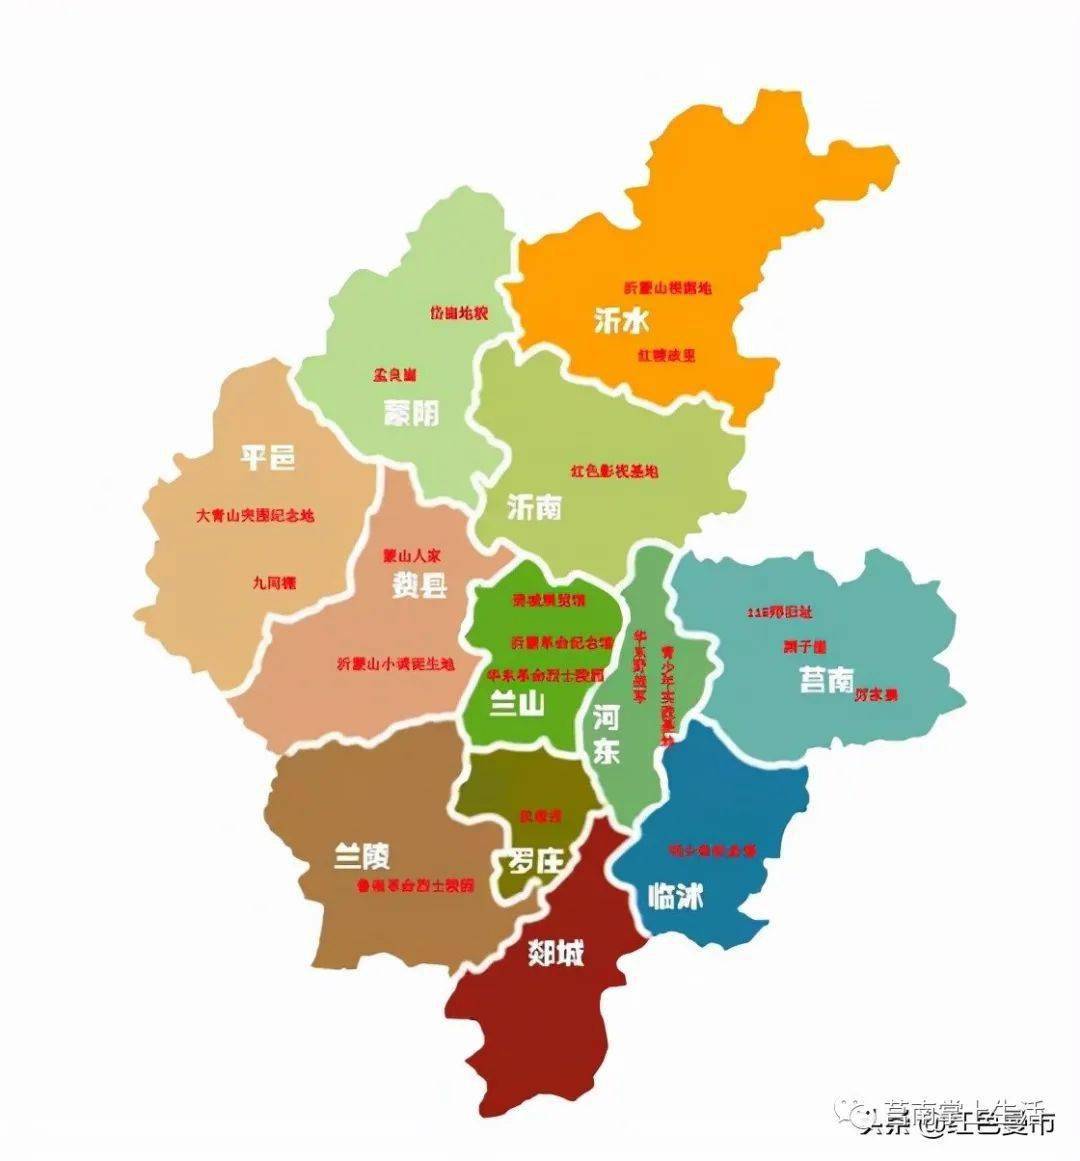 临沂最东部县莒南拥有大型产业集群两座高铁站两座城区